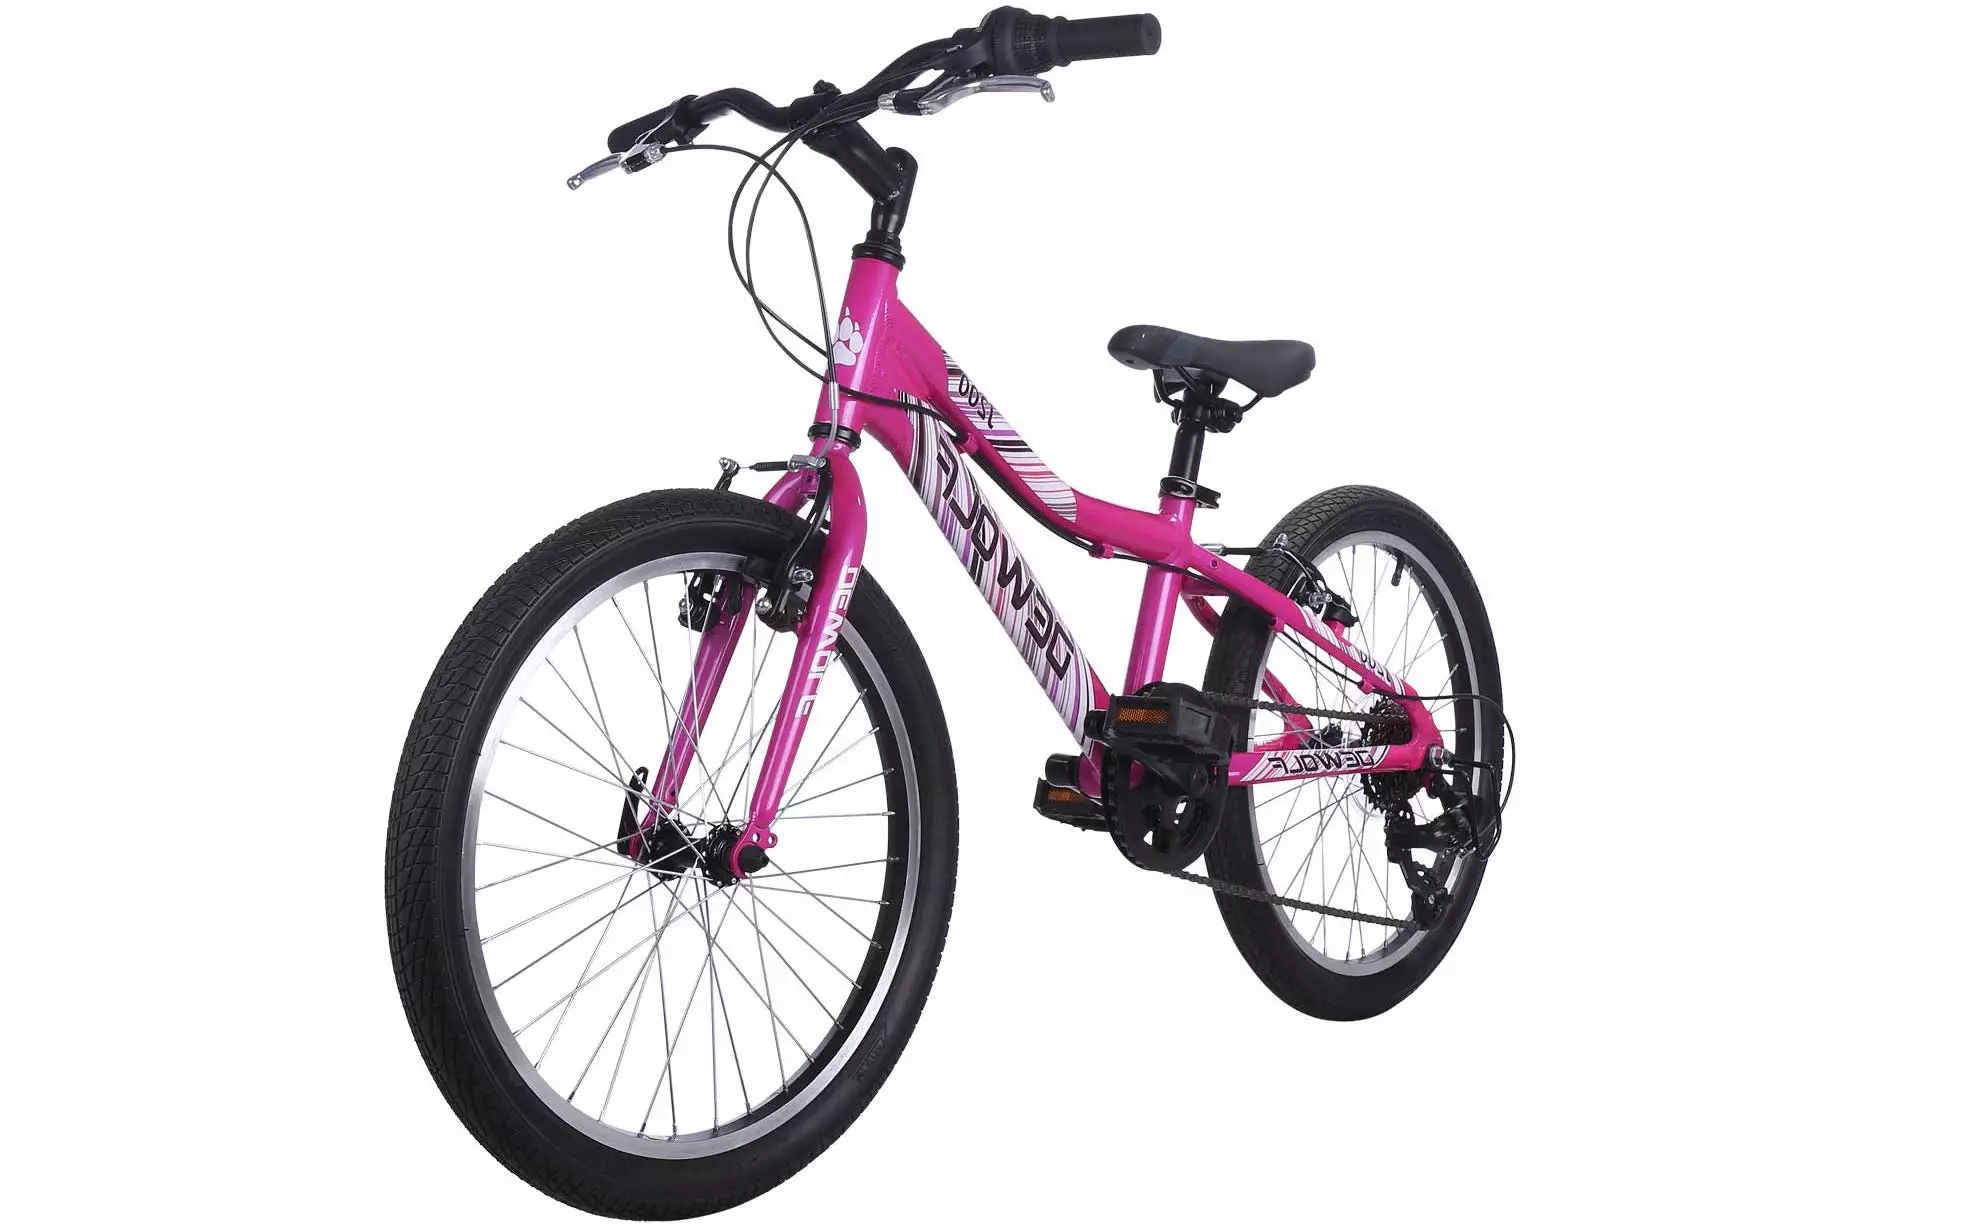 Fietse vir meisies 10-12 jaar oud: watter soort fiets om 'n meisie van 11 jaar te kies? Oorsig van vou sport en ander fietse 8590_6